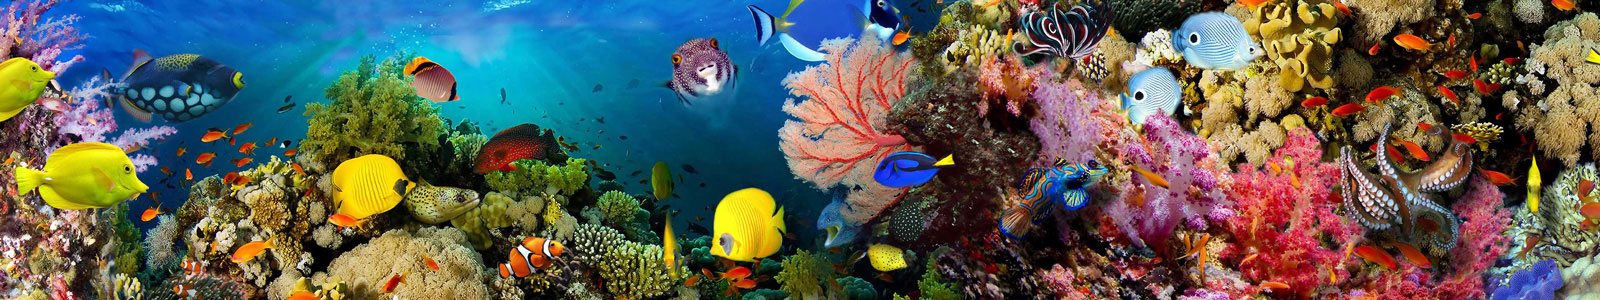 №3301 - Кораллы и рыбки